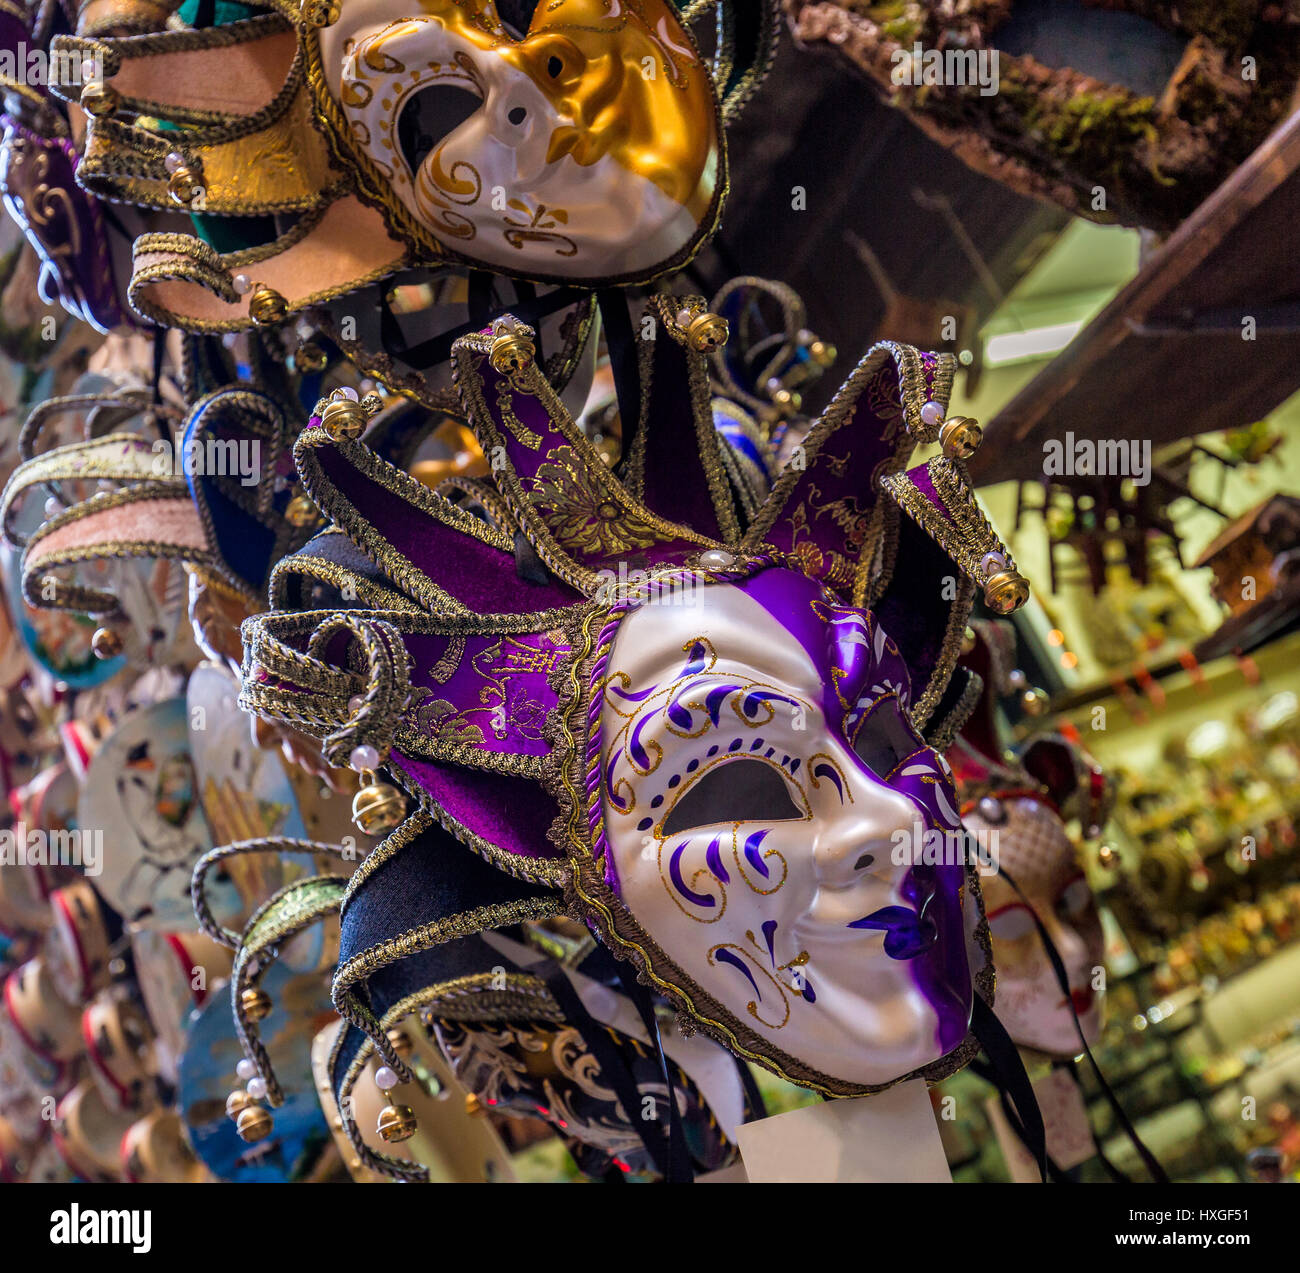 Collection de masques fête vénitienne. Très colorées, masques traditionnels utilisés en temps de Carnival masquerade. Banque D'Images